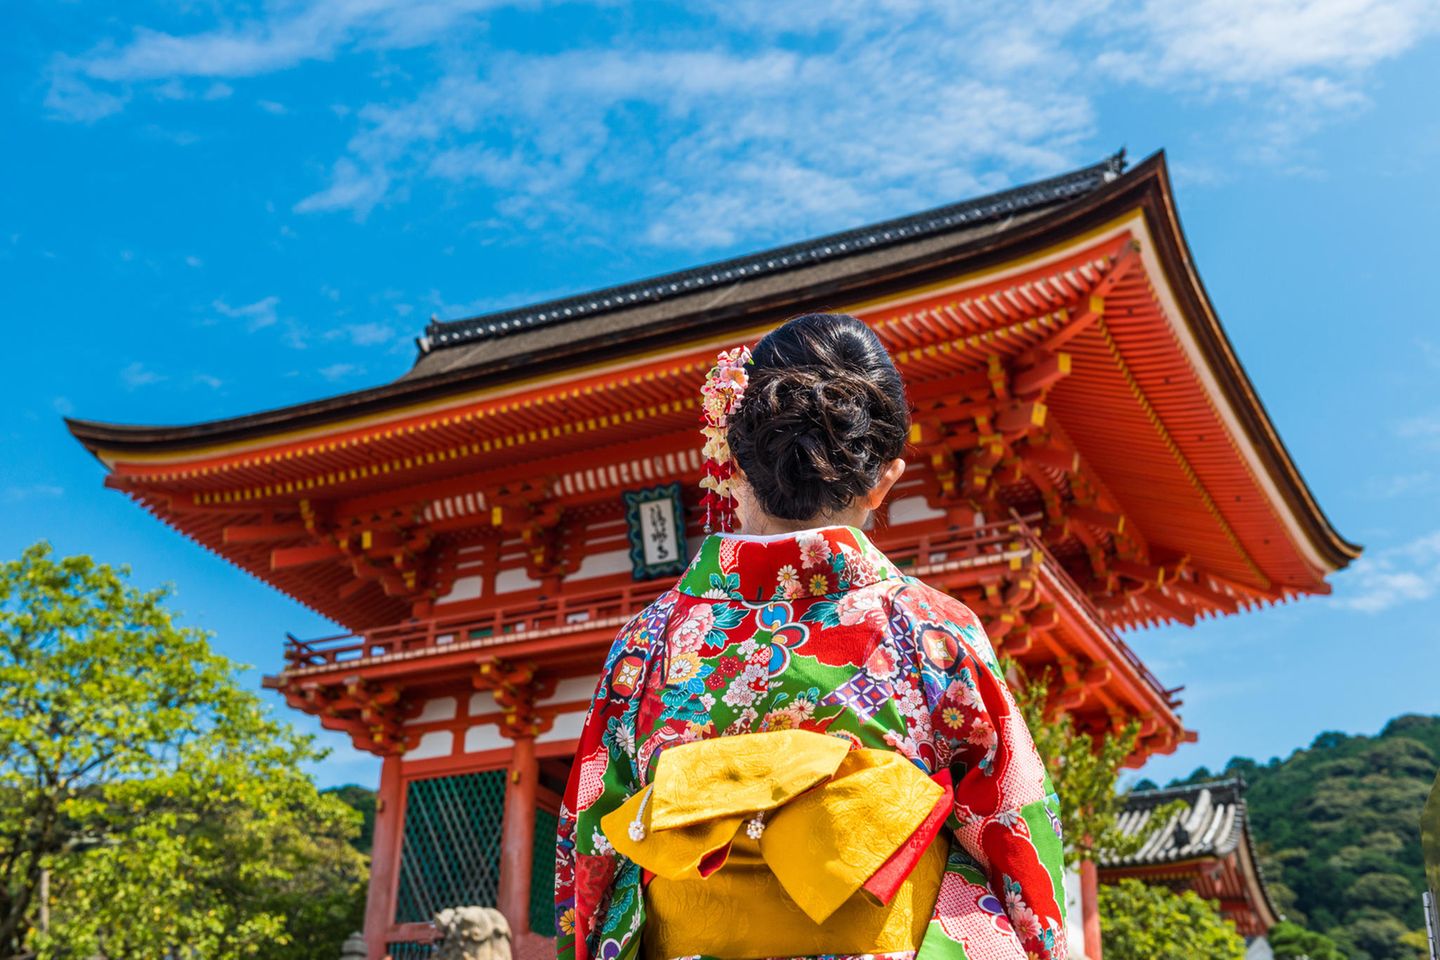 Reise zu Frauen: Japan